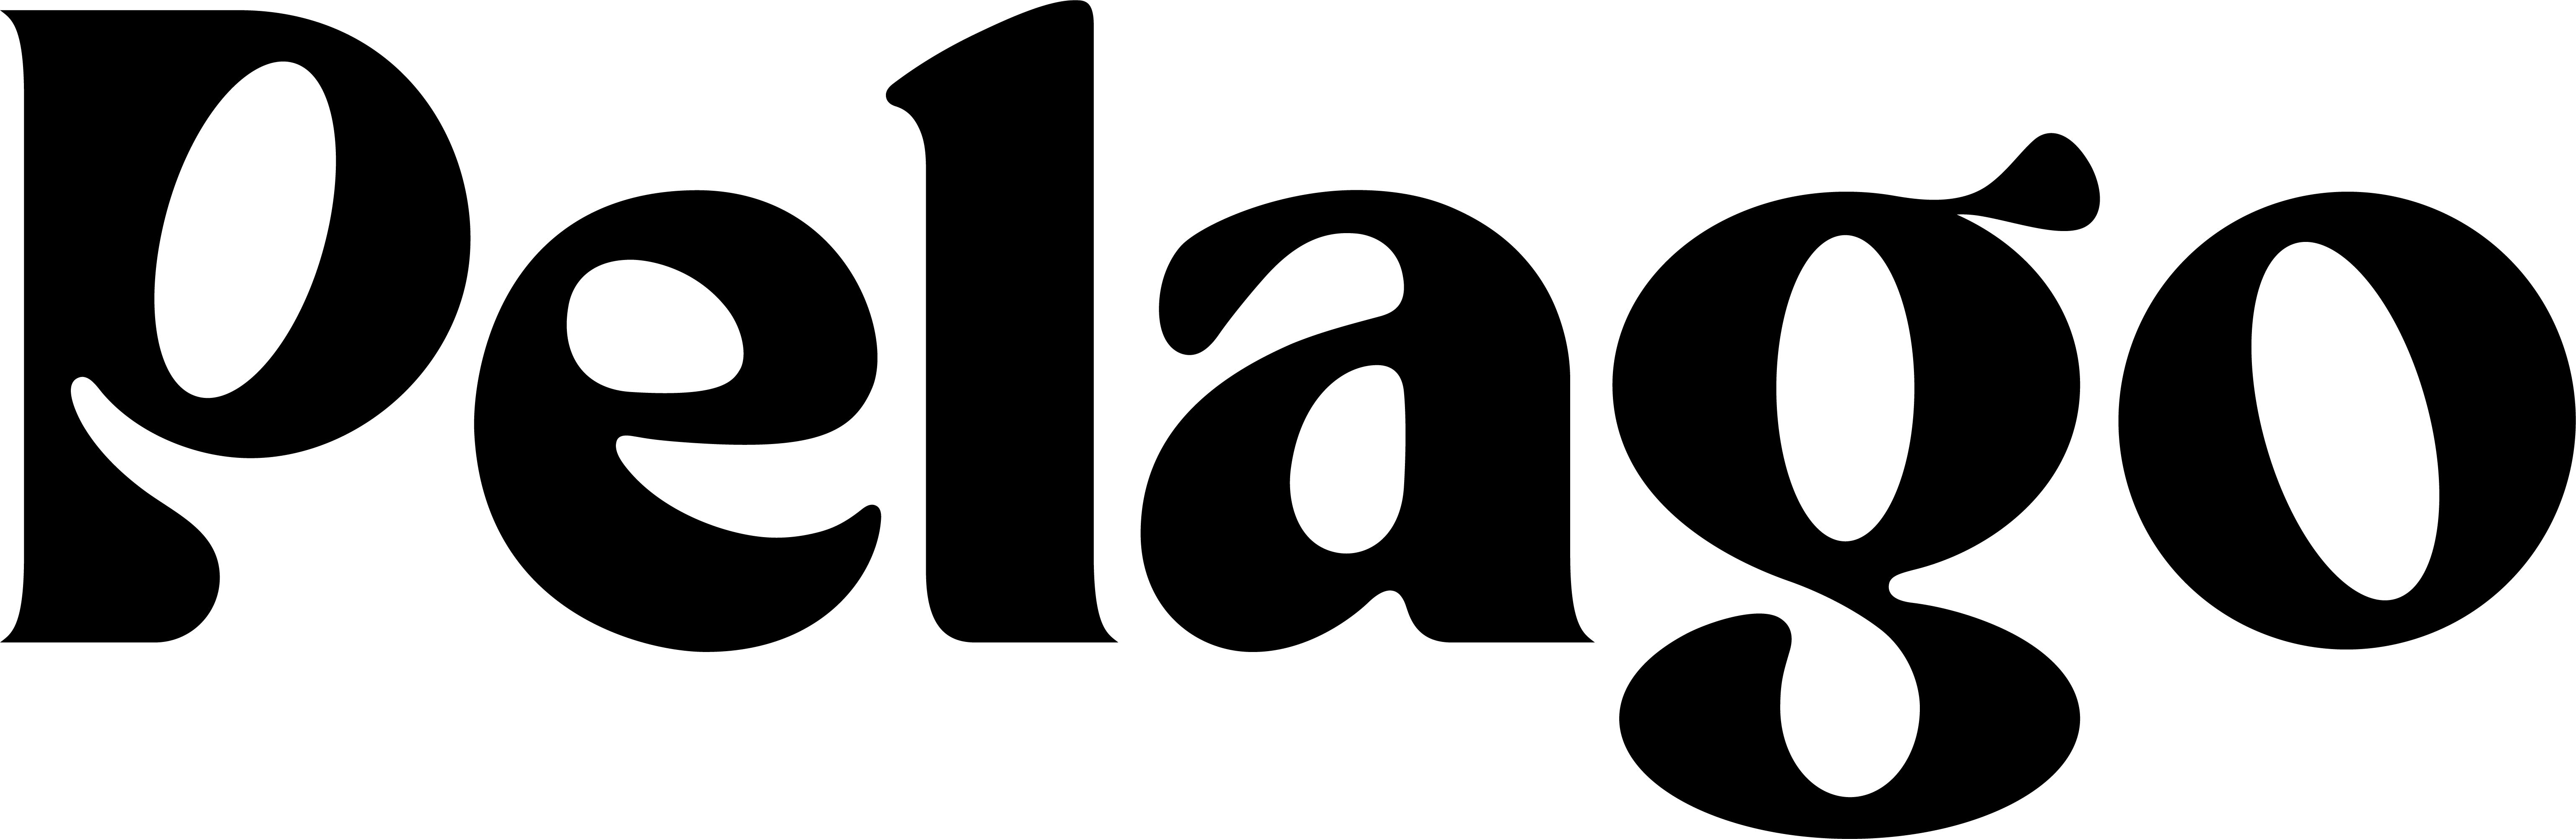 Pelago company logo